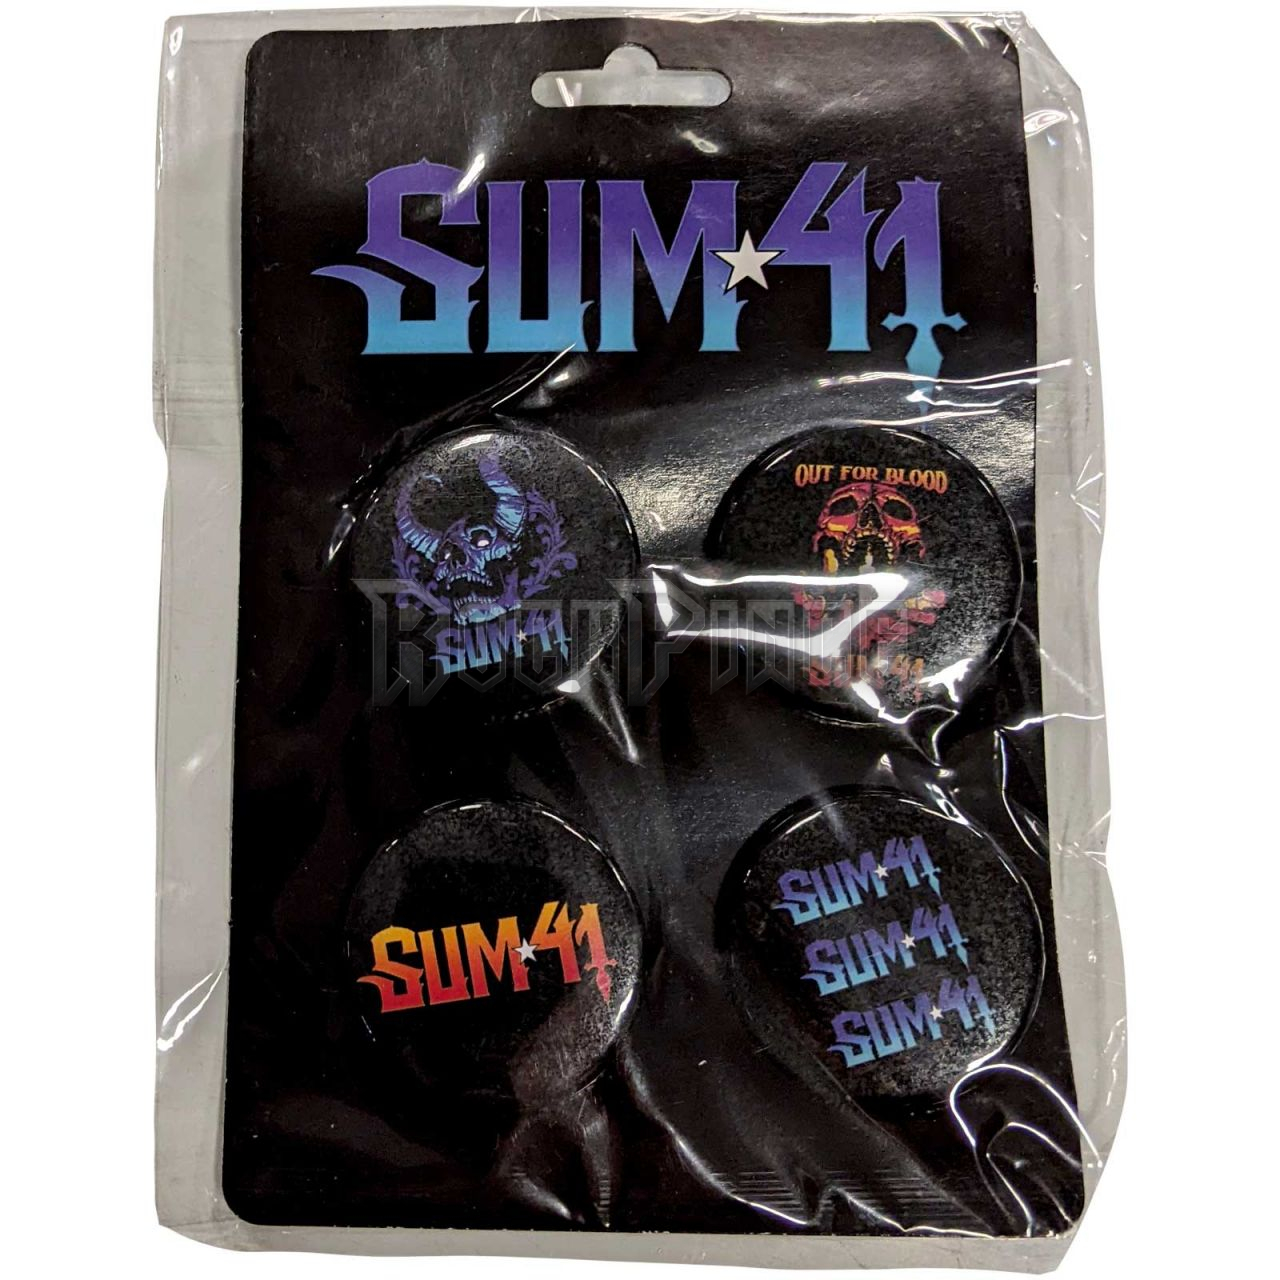 Sum 41 - Out For Blood - 4 db-os kitűző szett - SUMPINSET01